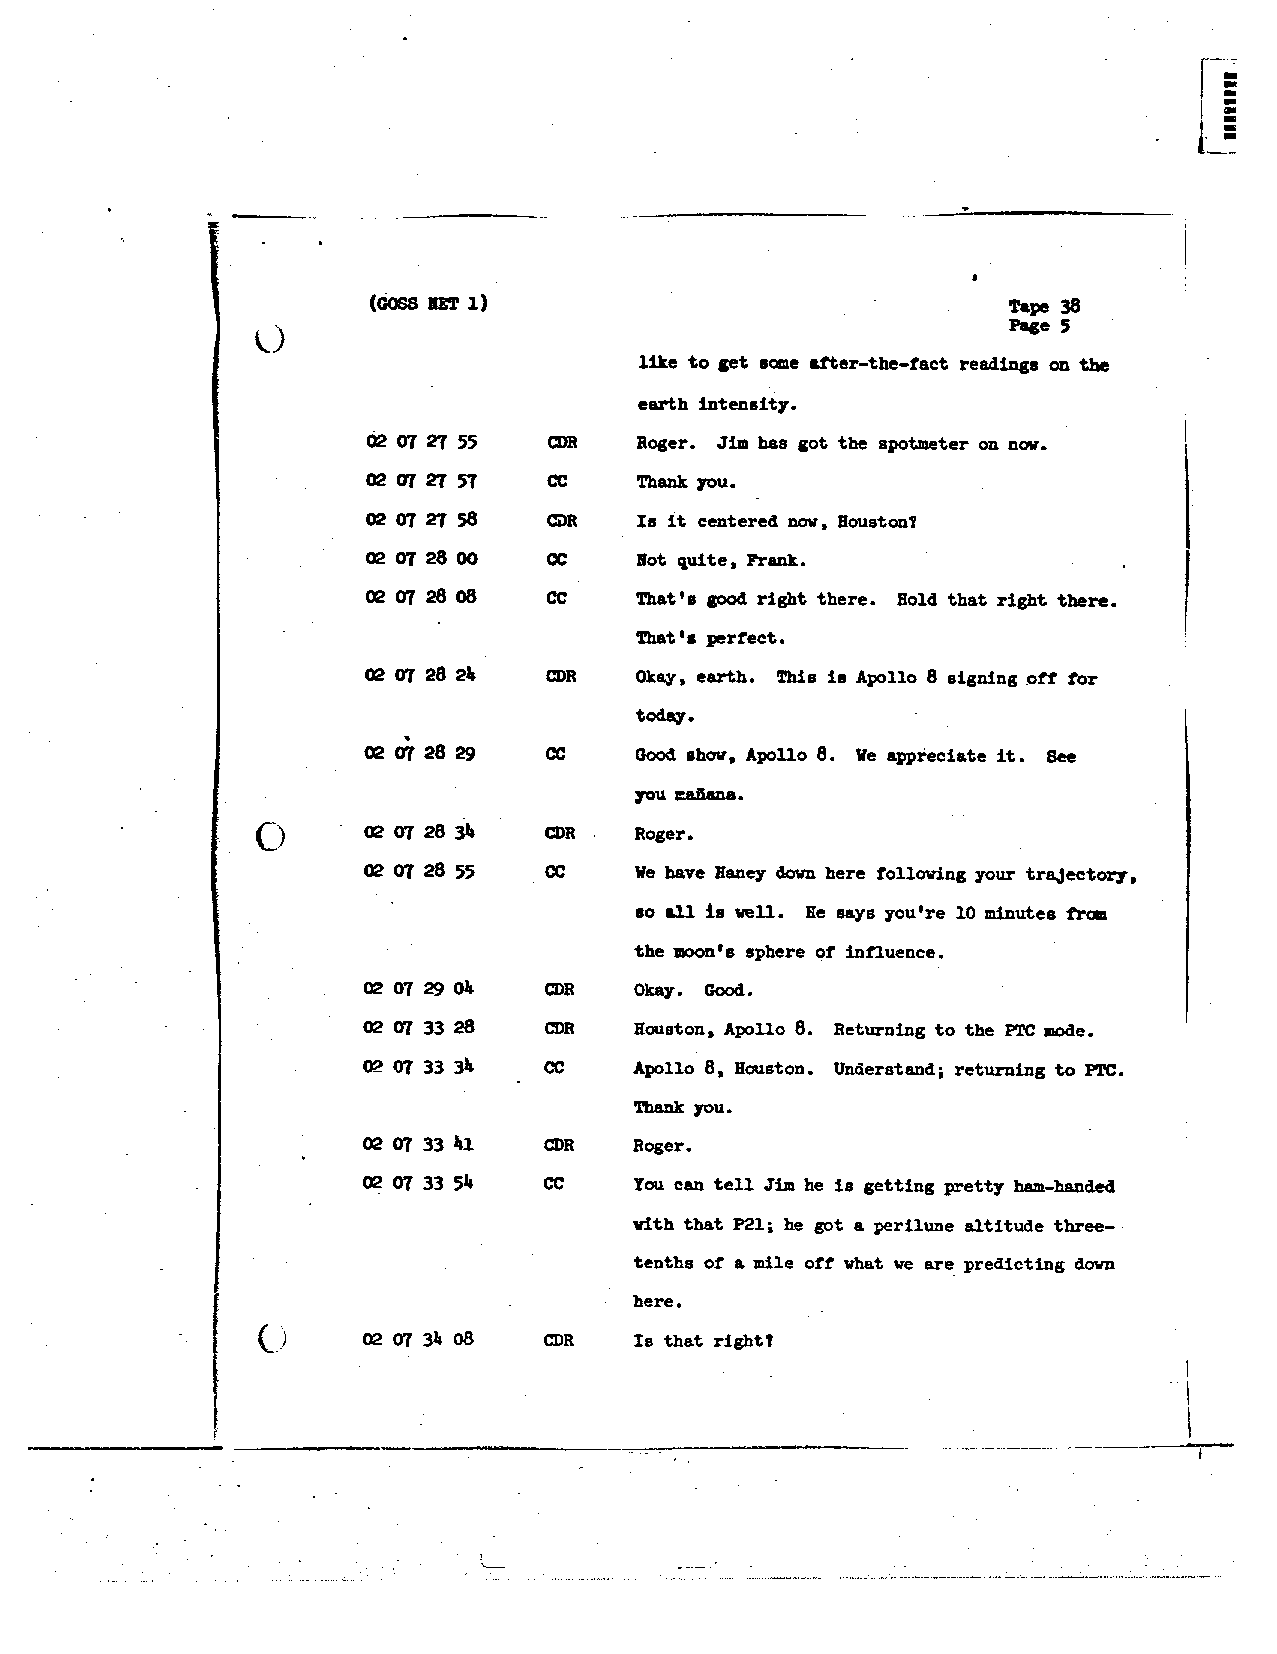 Page 298 of Apollo 8’s original transcript